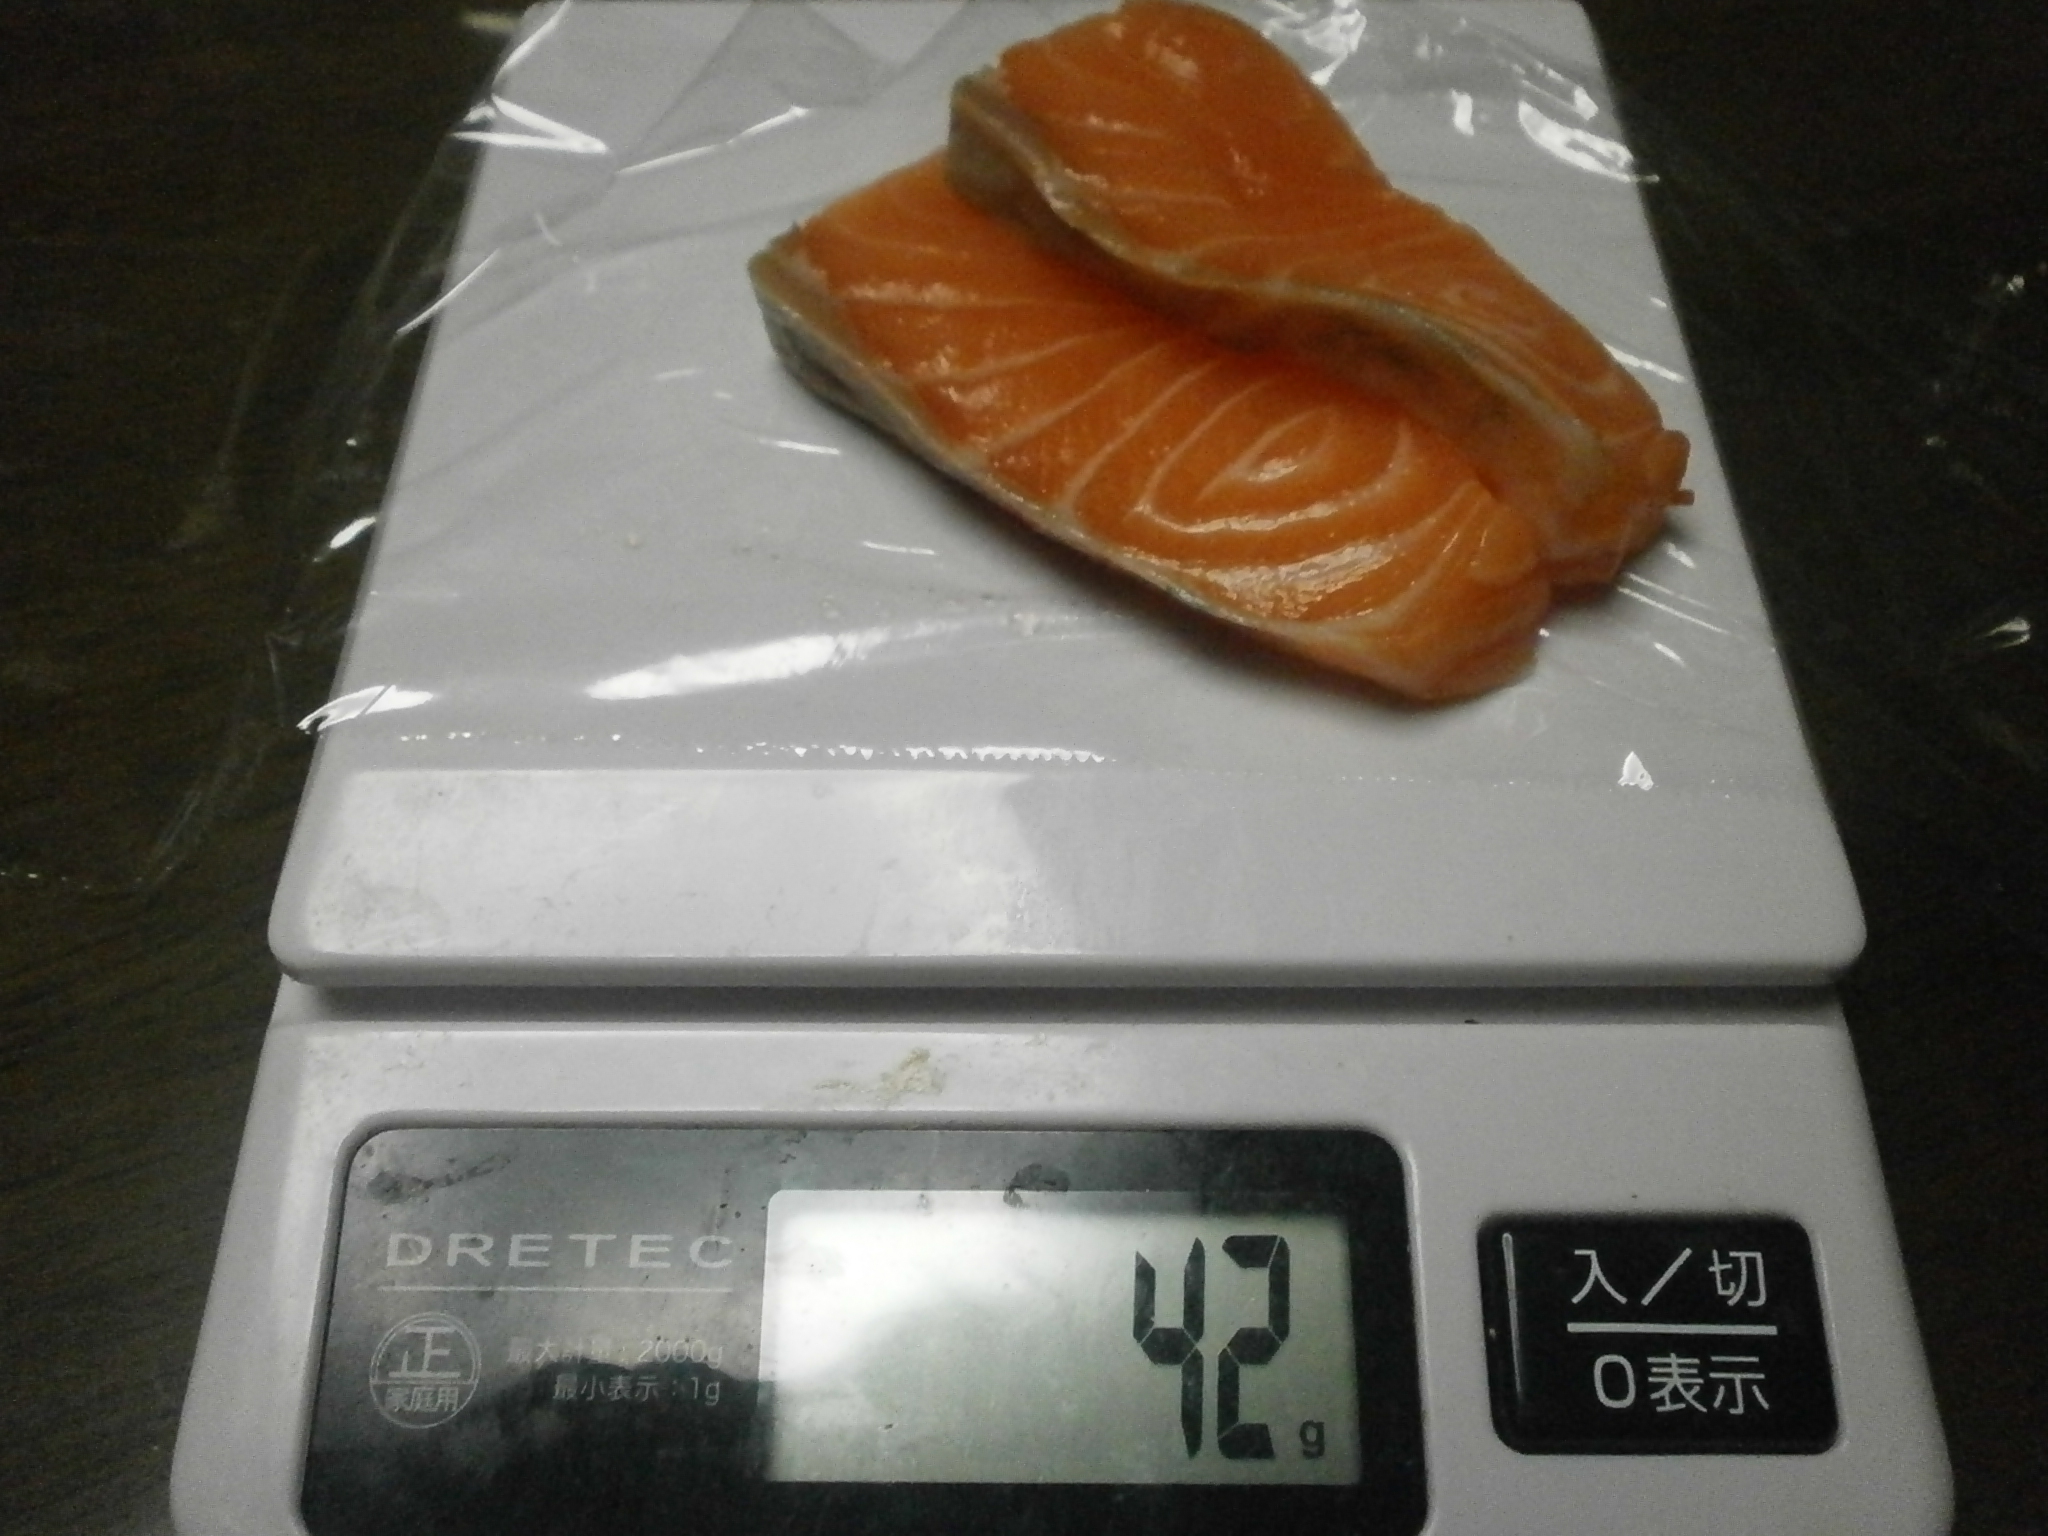 Salmón (42g-20g) de pescado